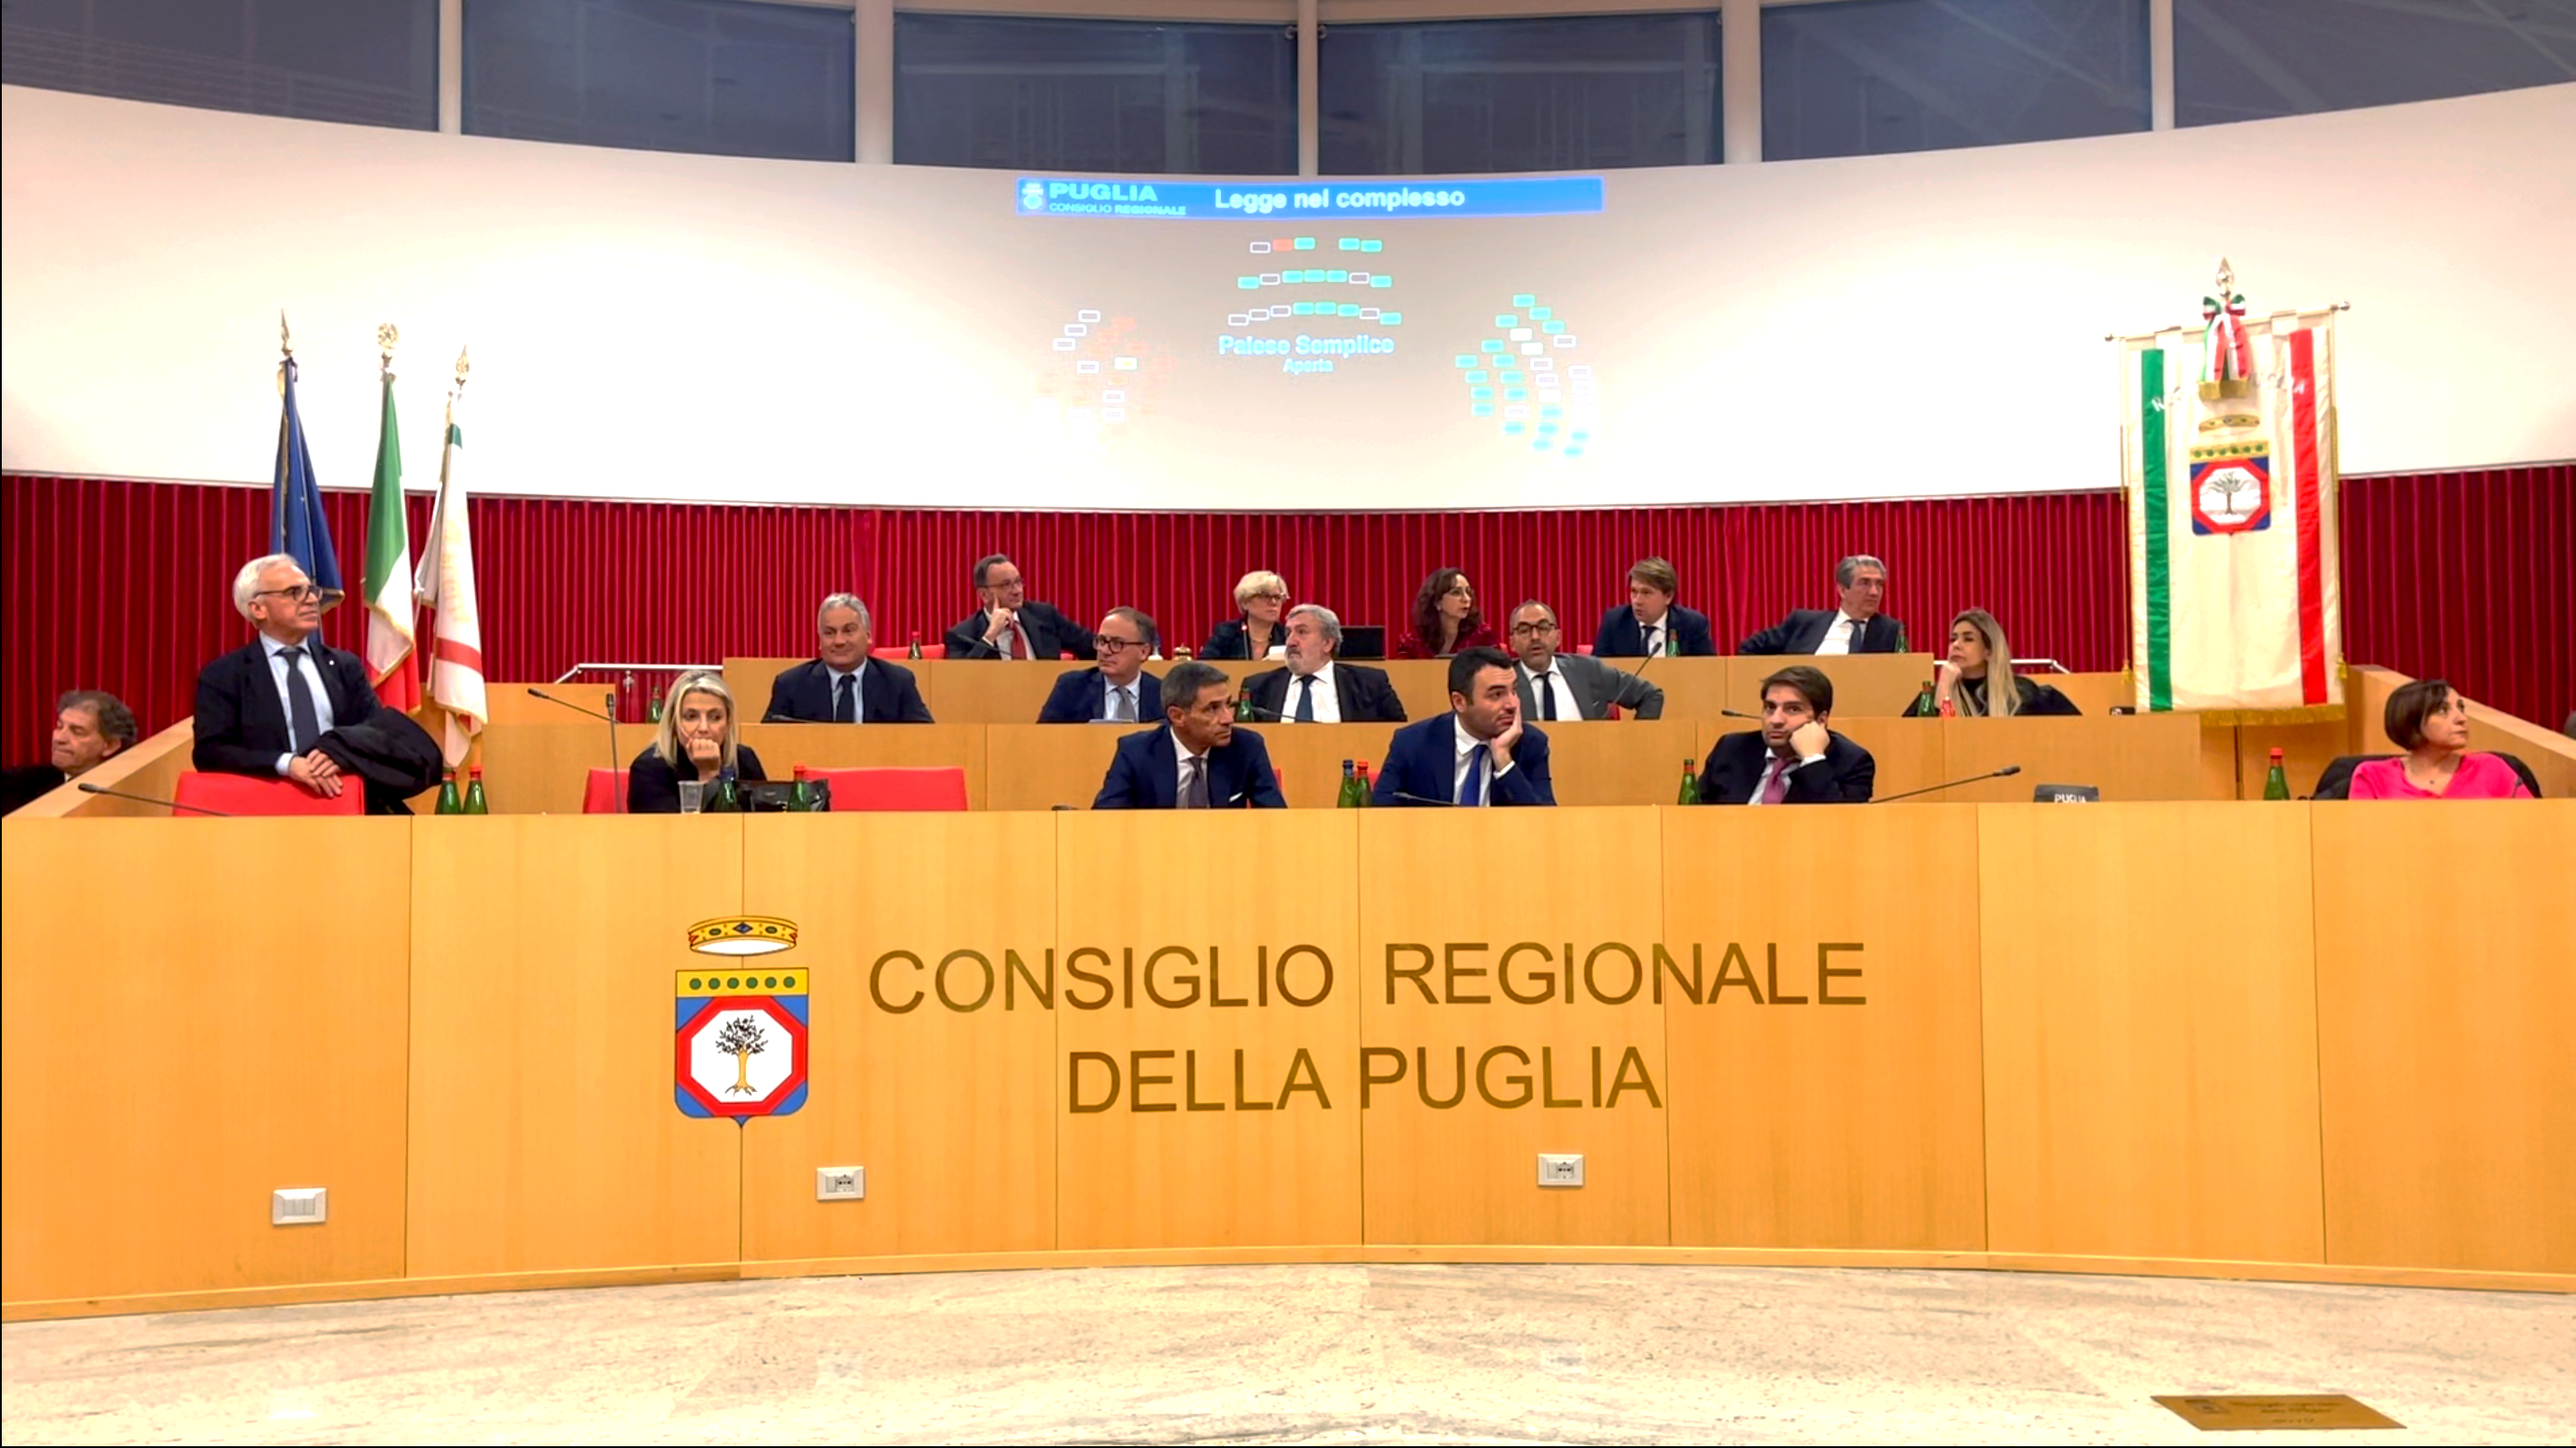 Galleria Emiliano e Piemontese sull’approvazione del bilancio 2023 in Consiglio regionale - Diapositiva 4 di 4